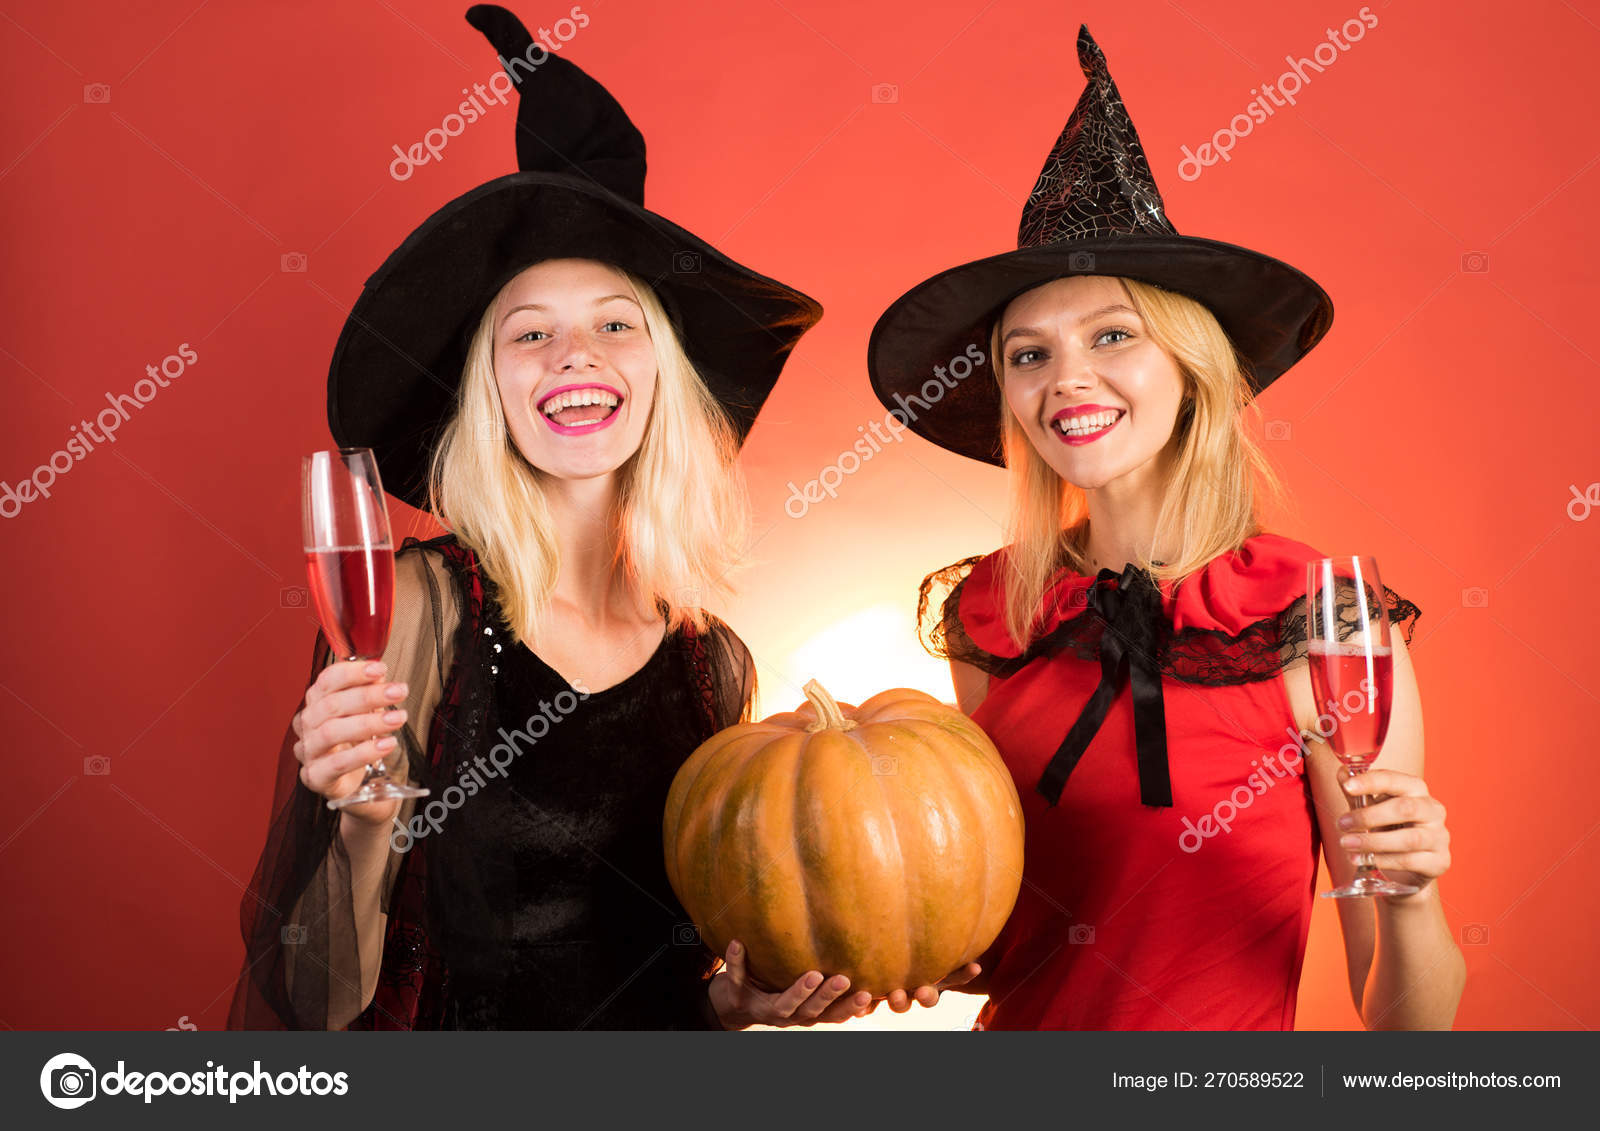 Disfraz Carnaval Disfraces de Halloween Bruja de mujer Retro Ropa negra  Disfraces de fiestas de Halloween Carnaval Halloween